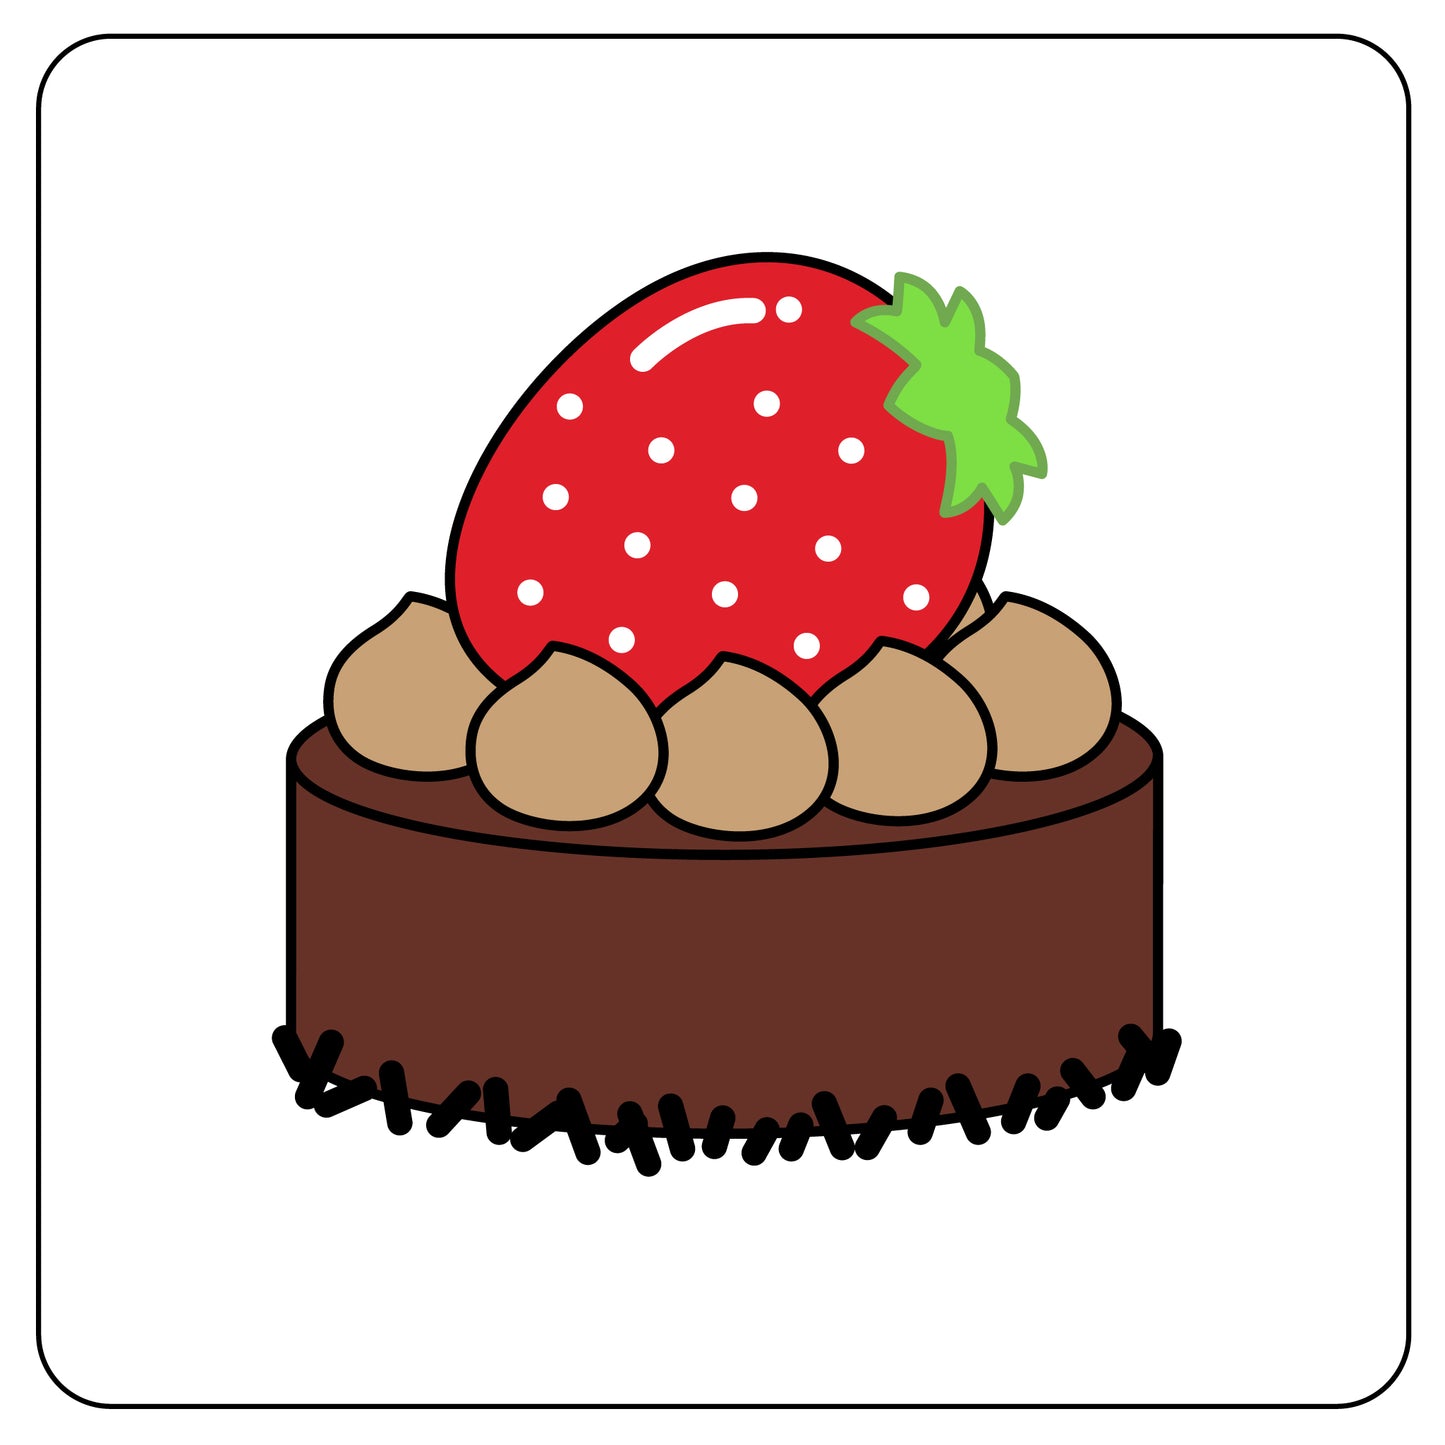 チョコレートケーキ 12cm